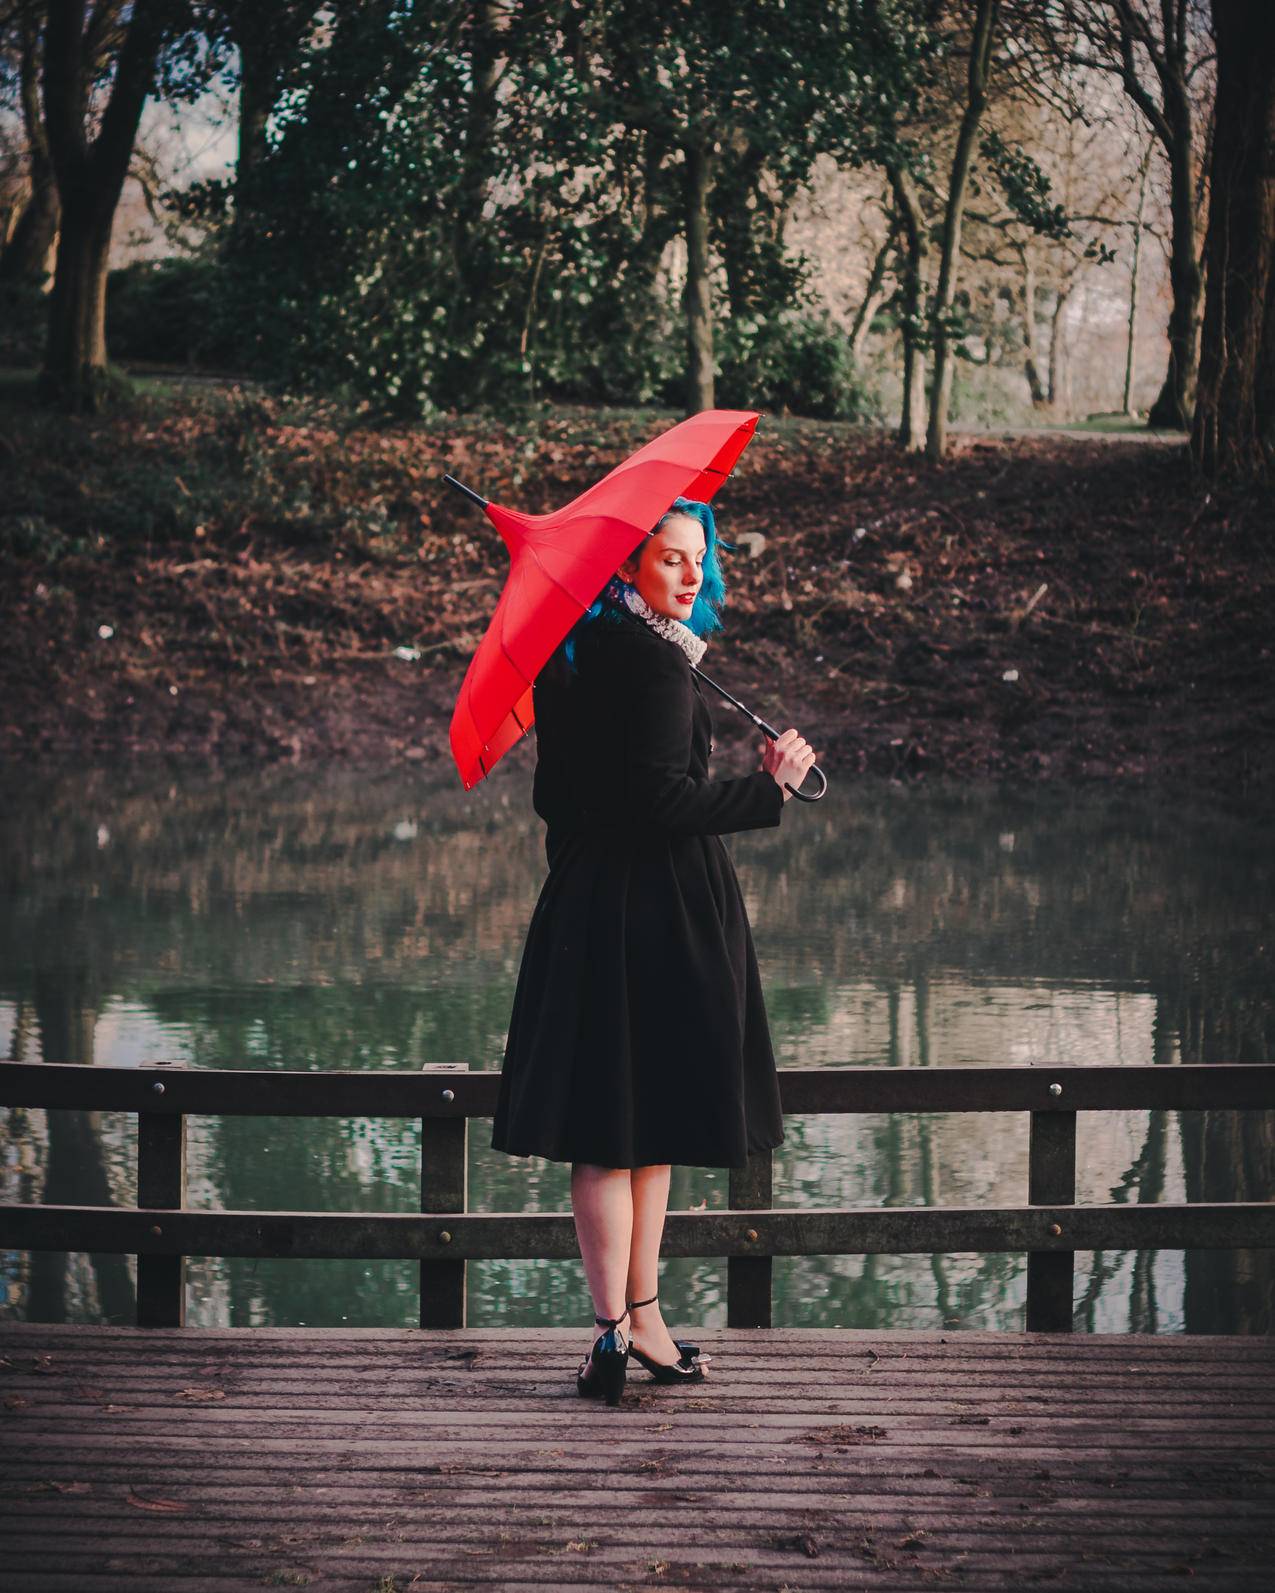 穿着黑色长袖礼服的女士手持红色雨伞